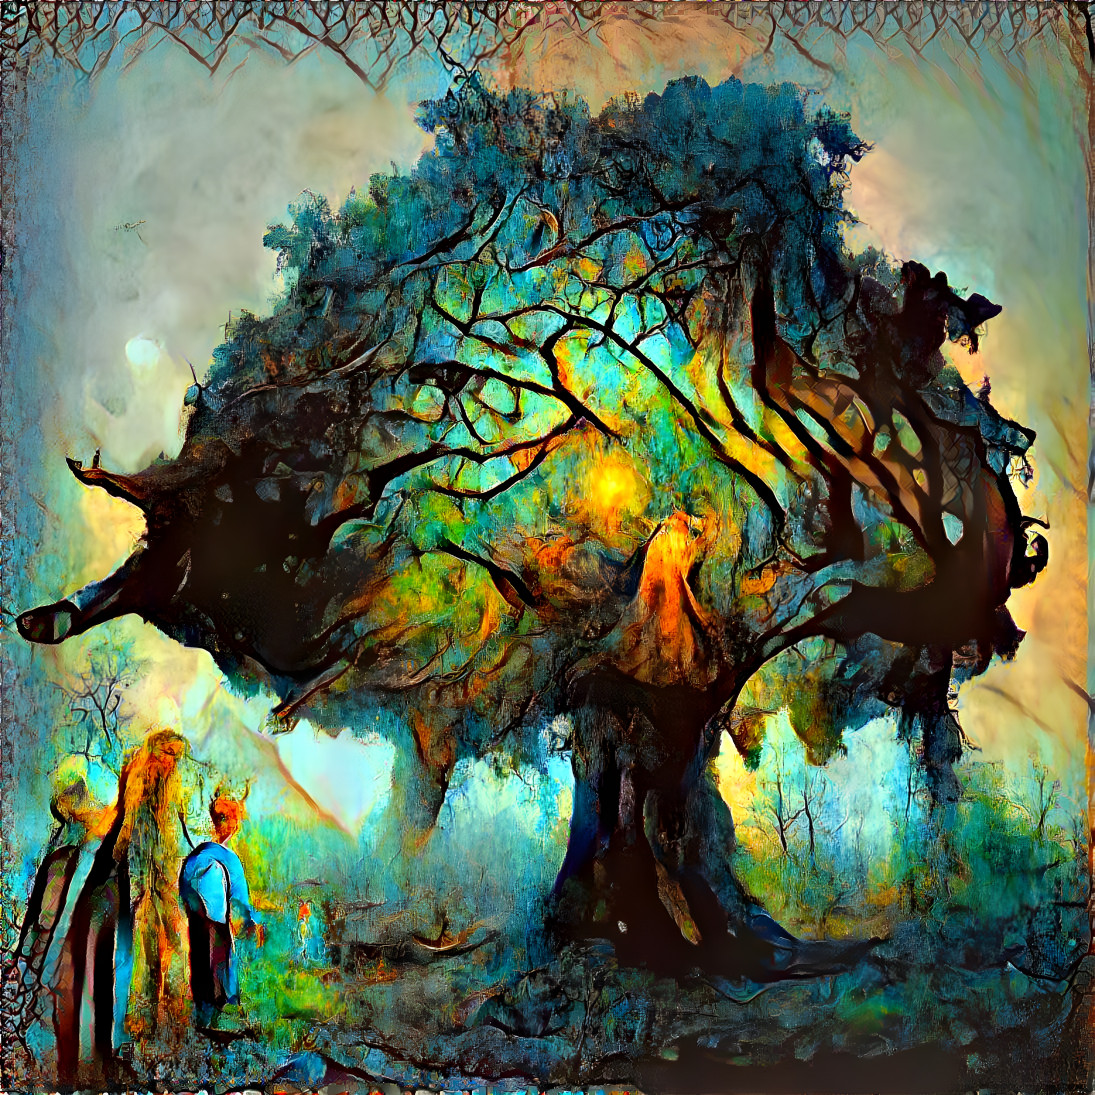 Giant Oak Tree